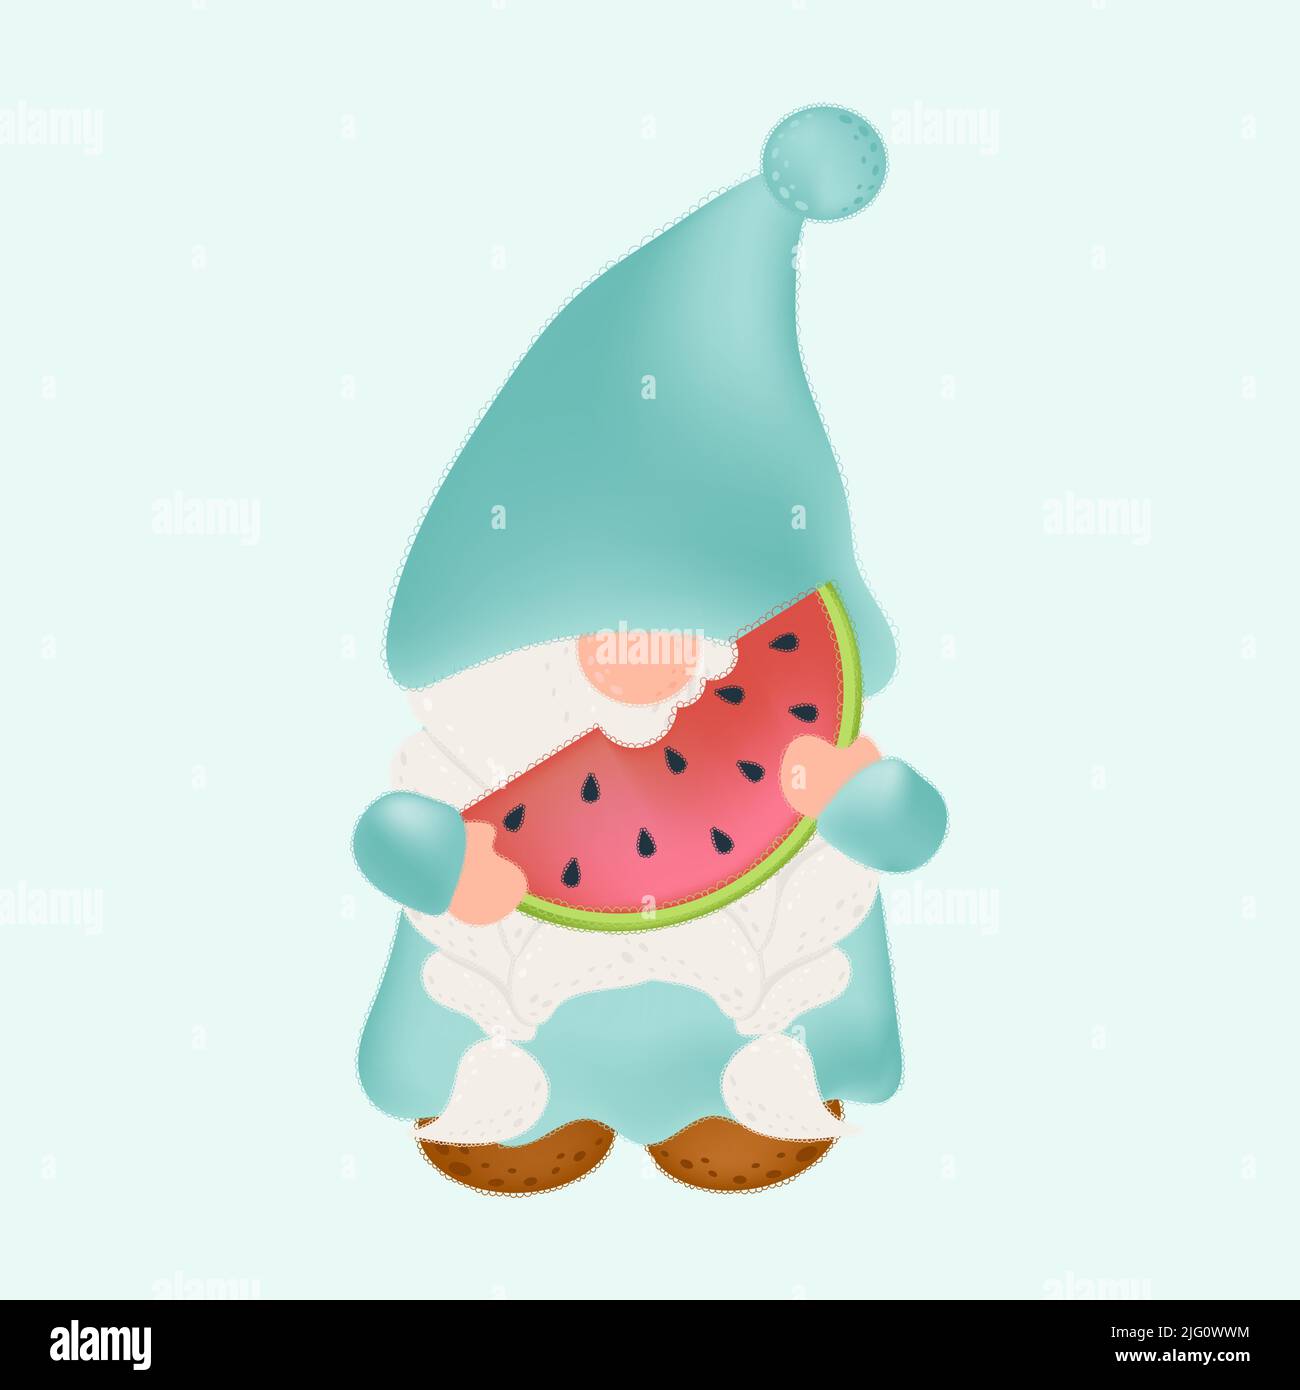 Jolie illustration de Gnome Clipart en dessin animé. Dessin animé clip Art Gnome avec une tranche de pastèque. Illustration vectorielle d'un caractère pour les autocollants Illustration de Vecteur